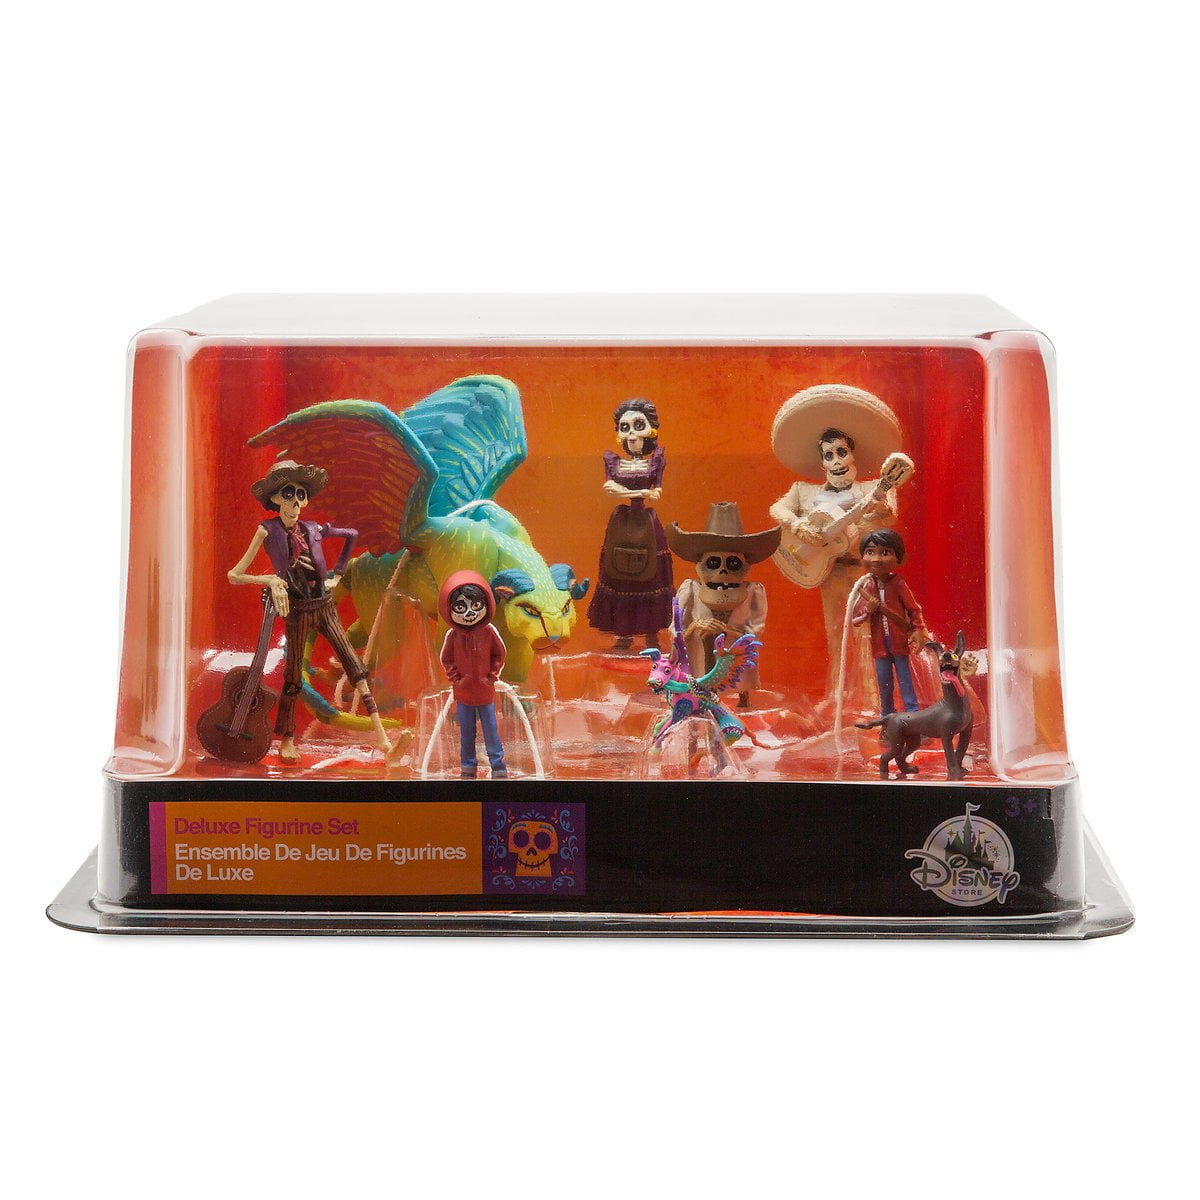 Disney Pixar Coco Deluxe Figurine Set Of Figures 8 Figures New Playset Cake Top 